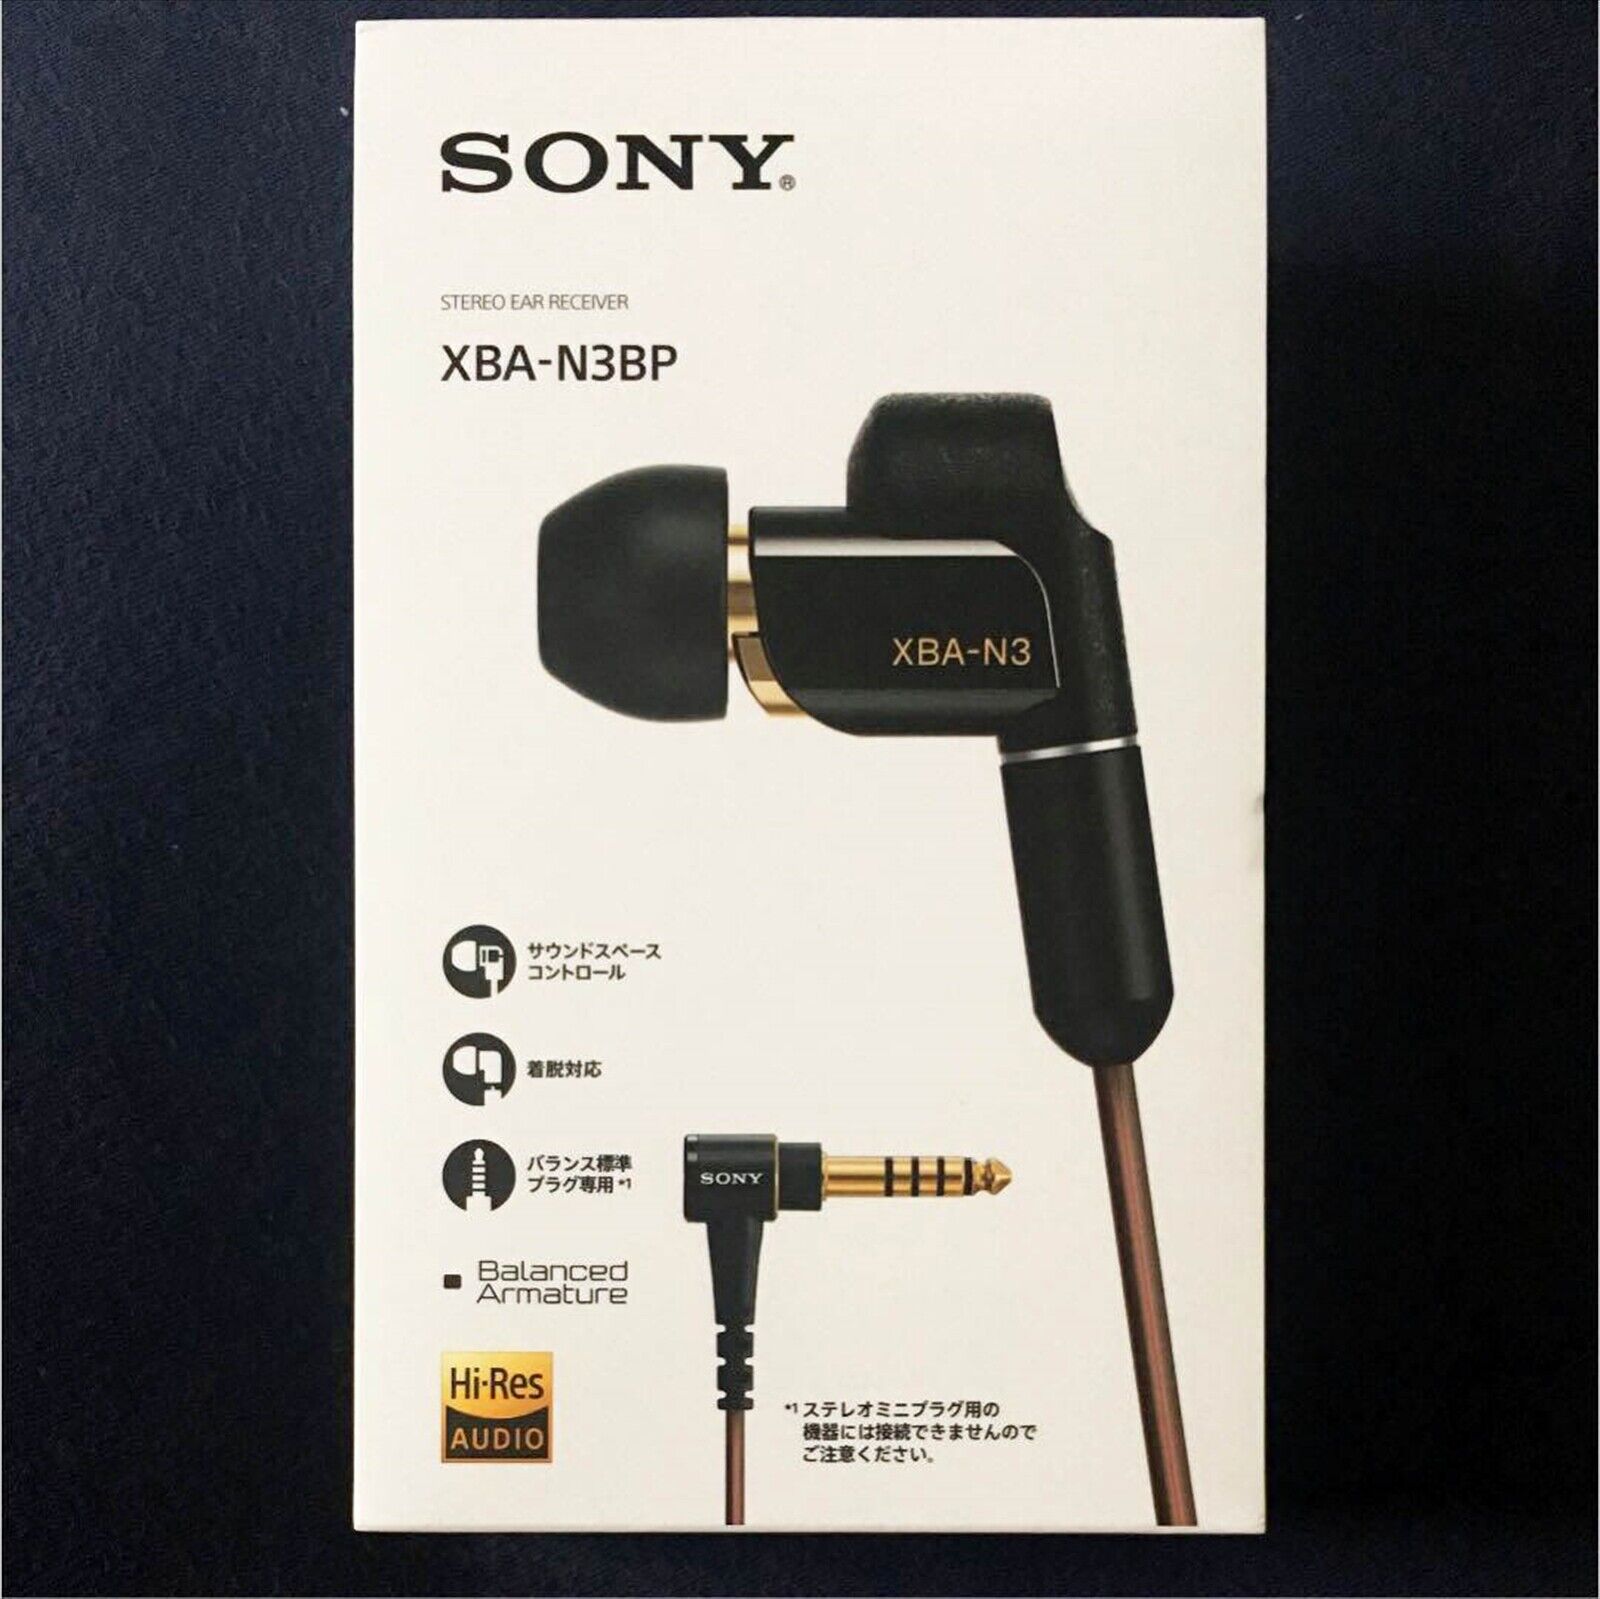 Sony XBA-N3BP In Ear Wired Headphones - Black for sale online | eBay